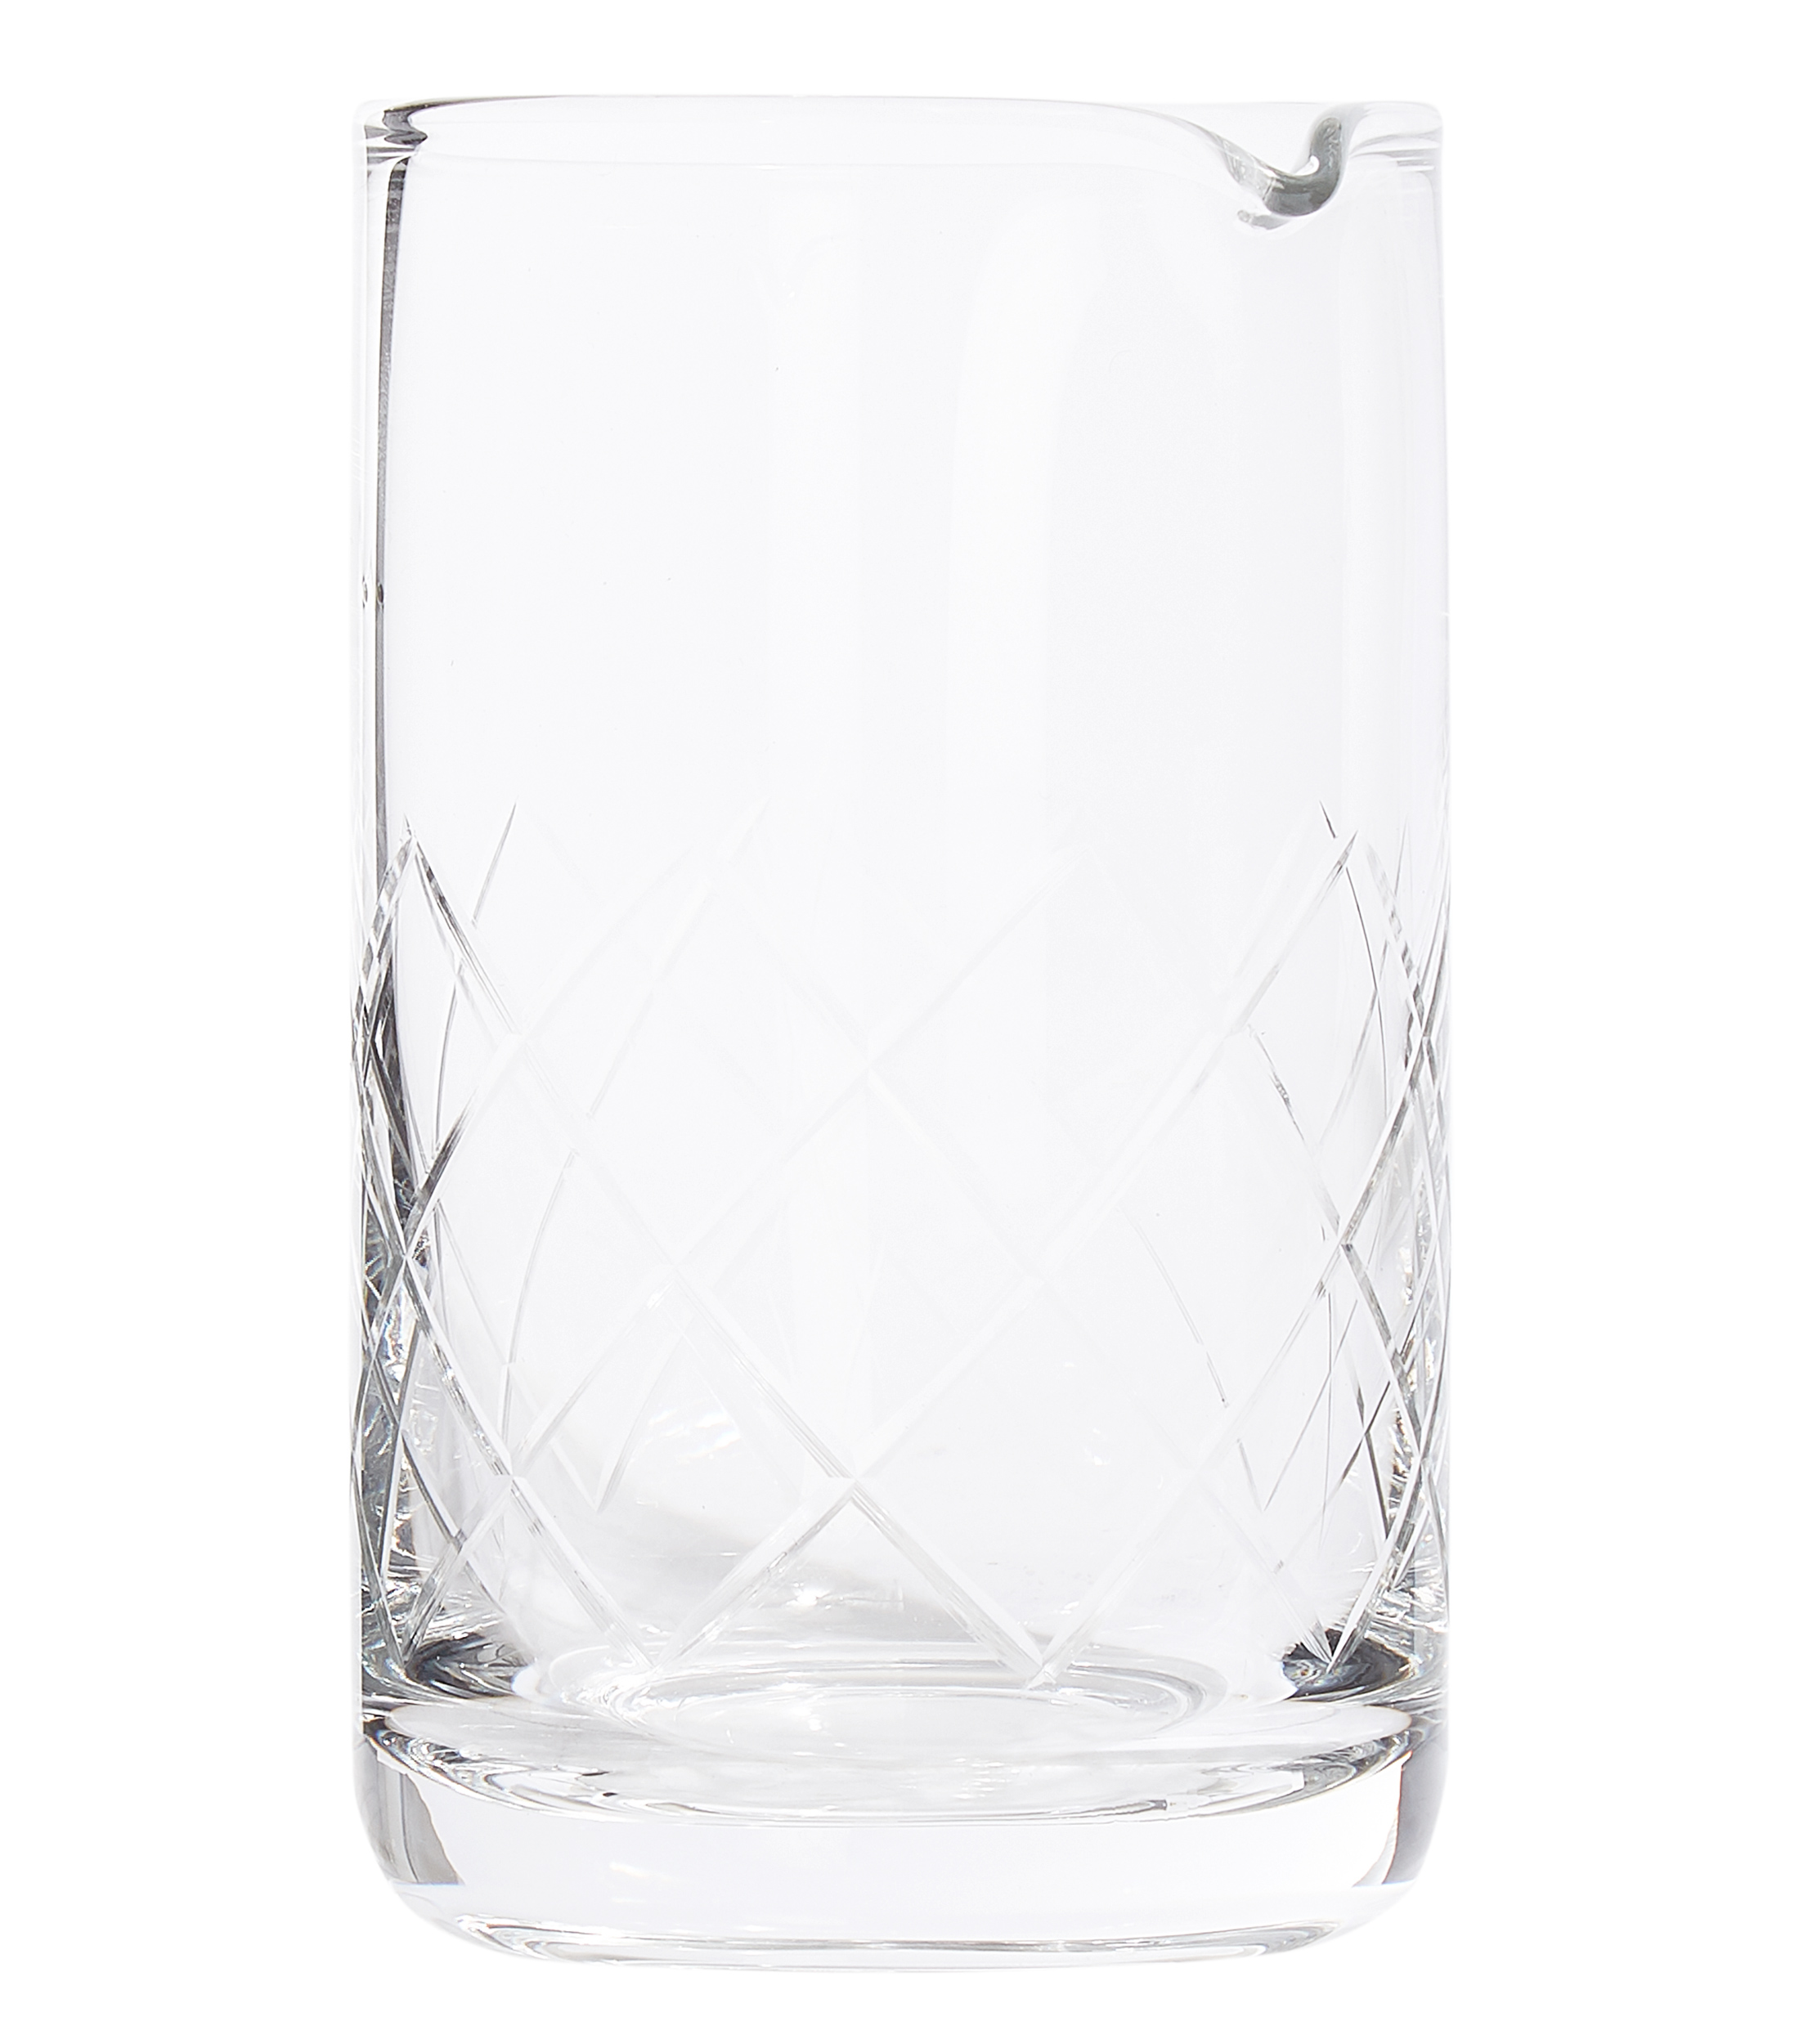 Vaso mezclador transparente con relieve alrededor.